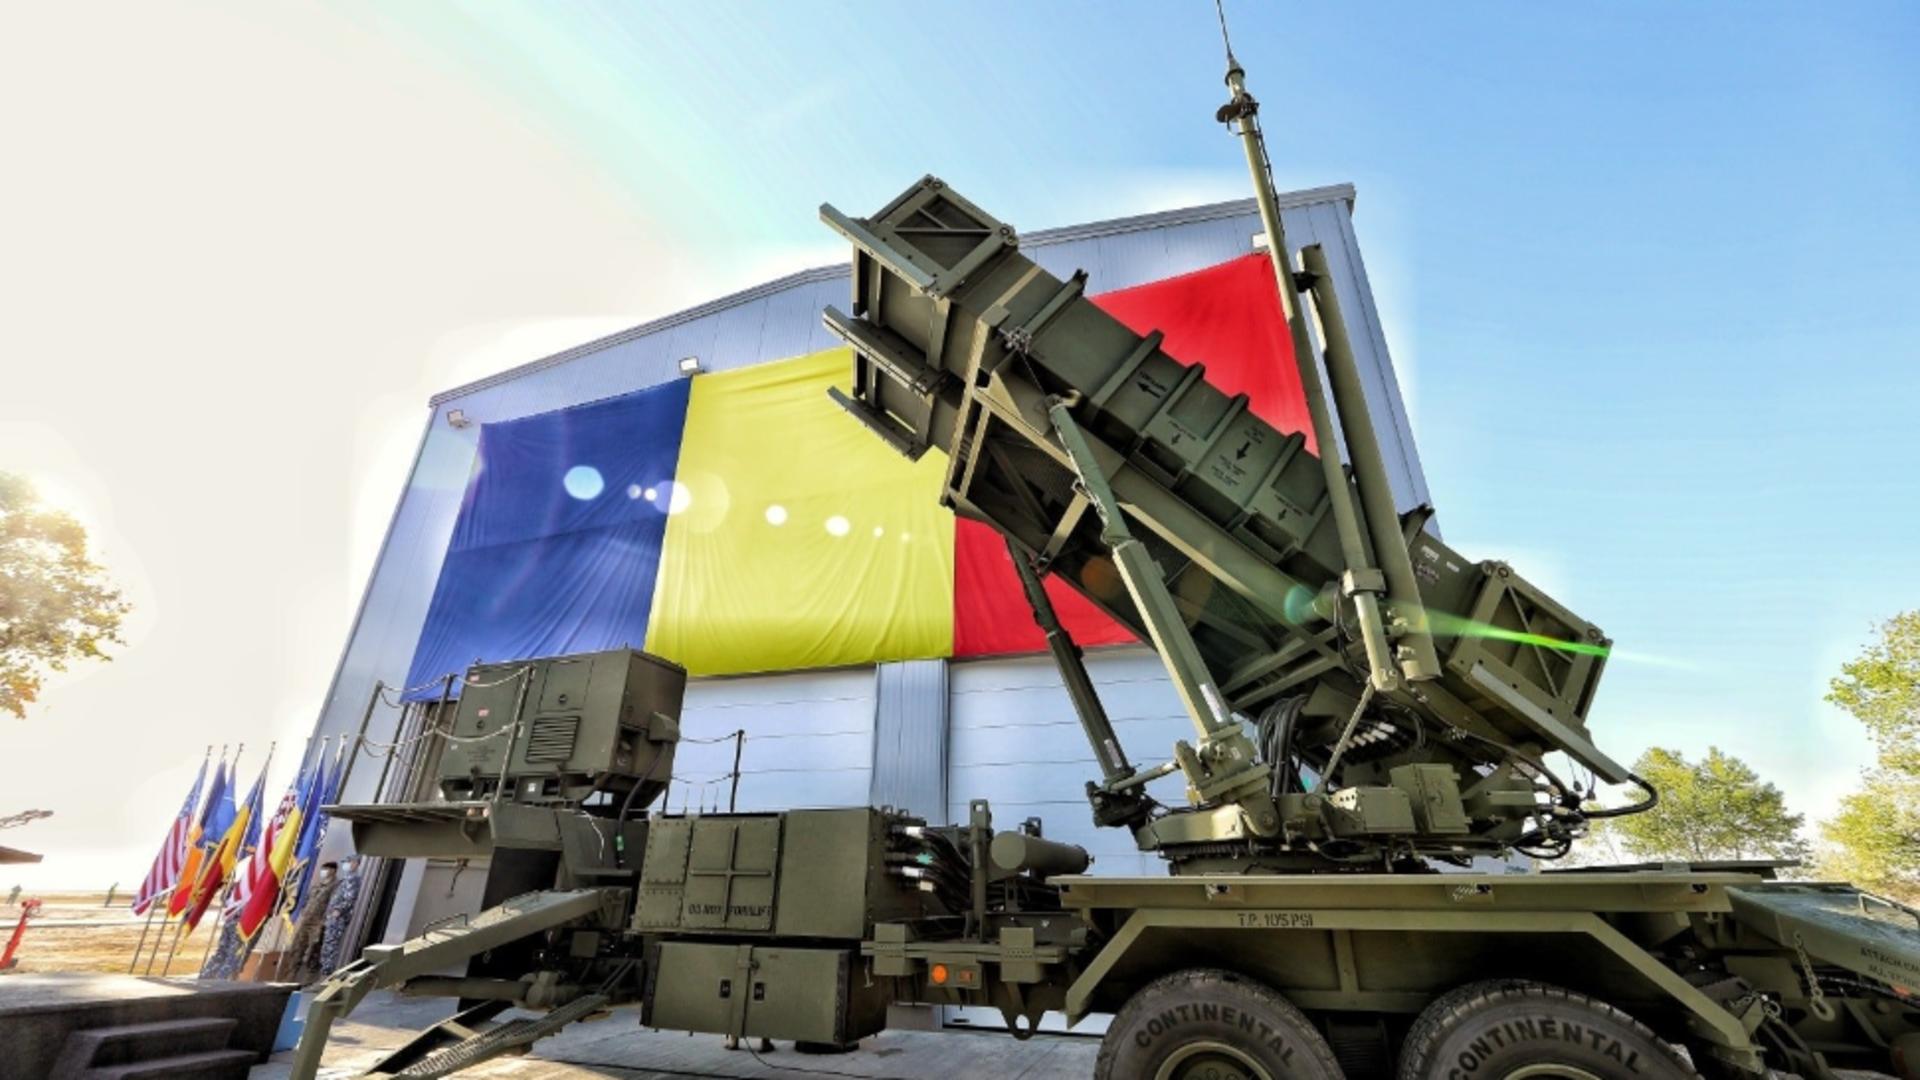 Sistemul de apărare Patriot, pe care România a plătit 4 miliarde de dolari, a dat rateuri. A fost pierdută legătura cu unul dintre lansatoare